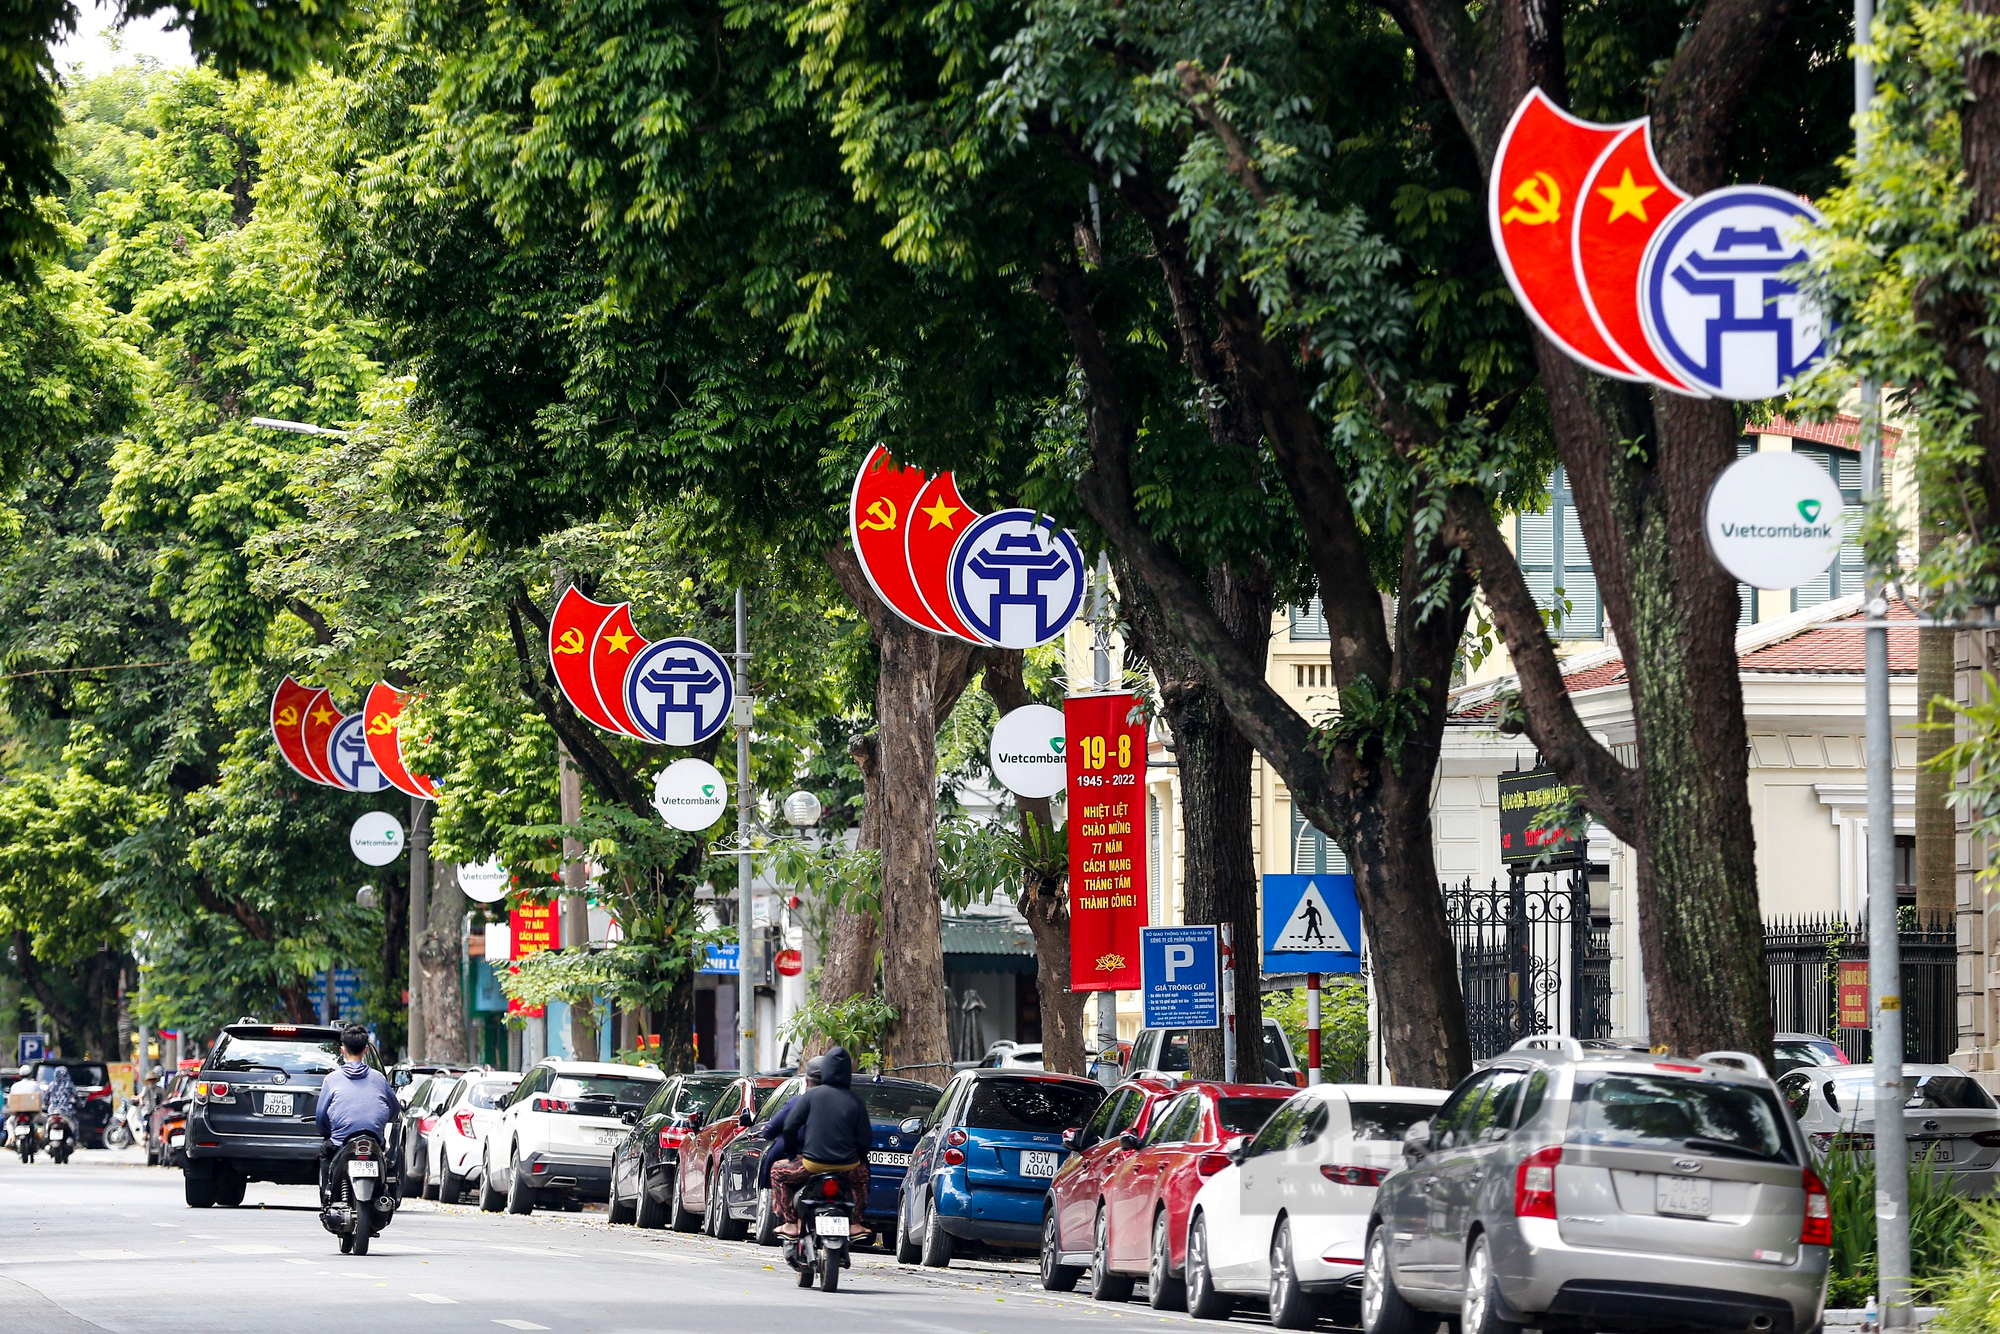 Đường phố Hà Nội rực màu cờ đỏ thắm chào mừng ngày Quốc khánh 2/9 - Ảnh 14.